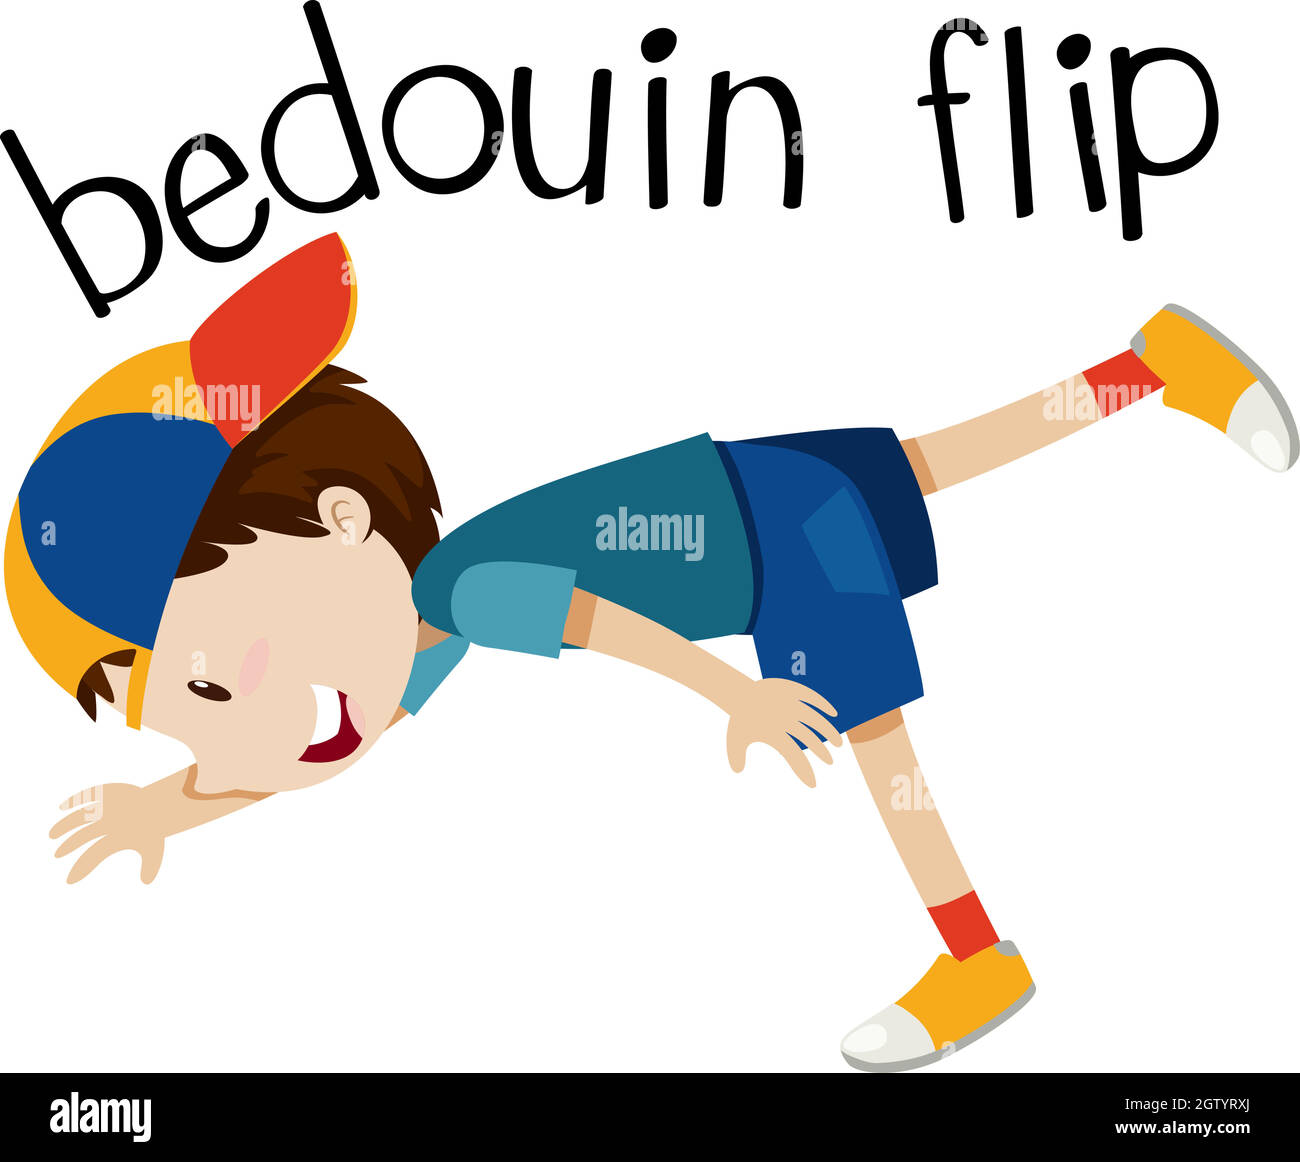 Wordcard pour bedouin flip avec garçon flip Illustration de Vecteur